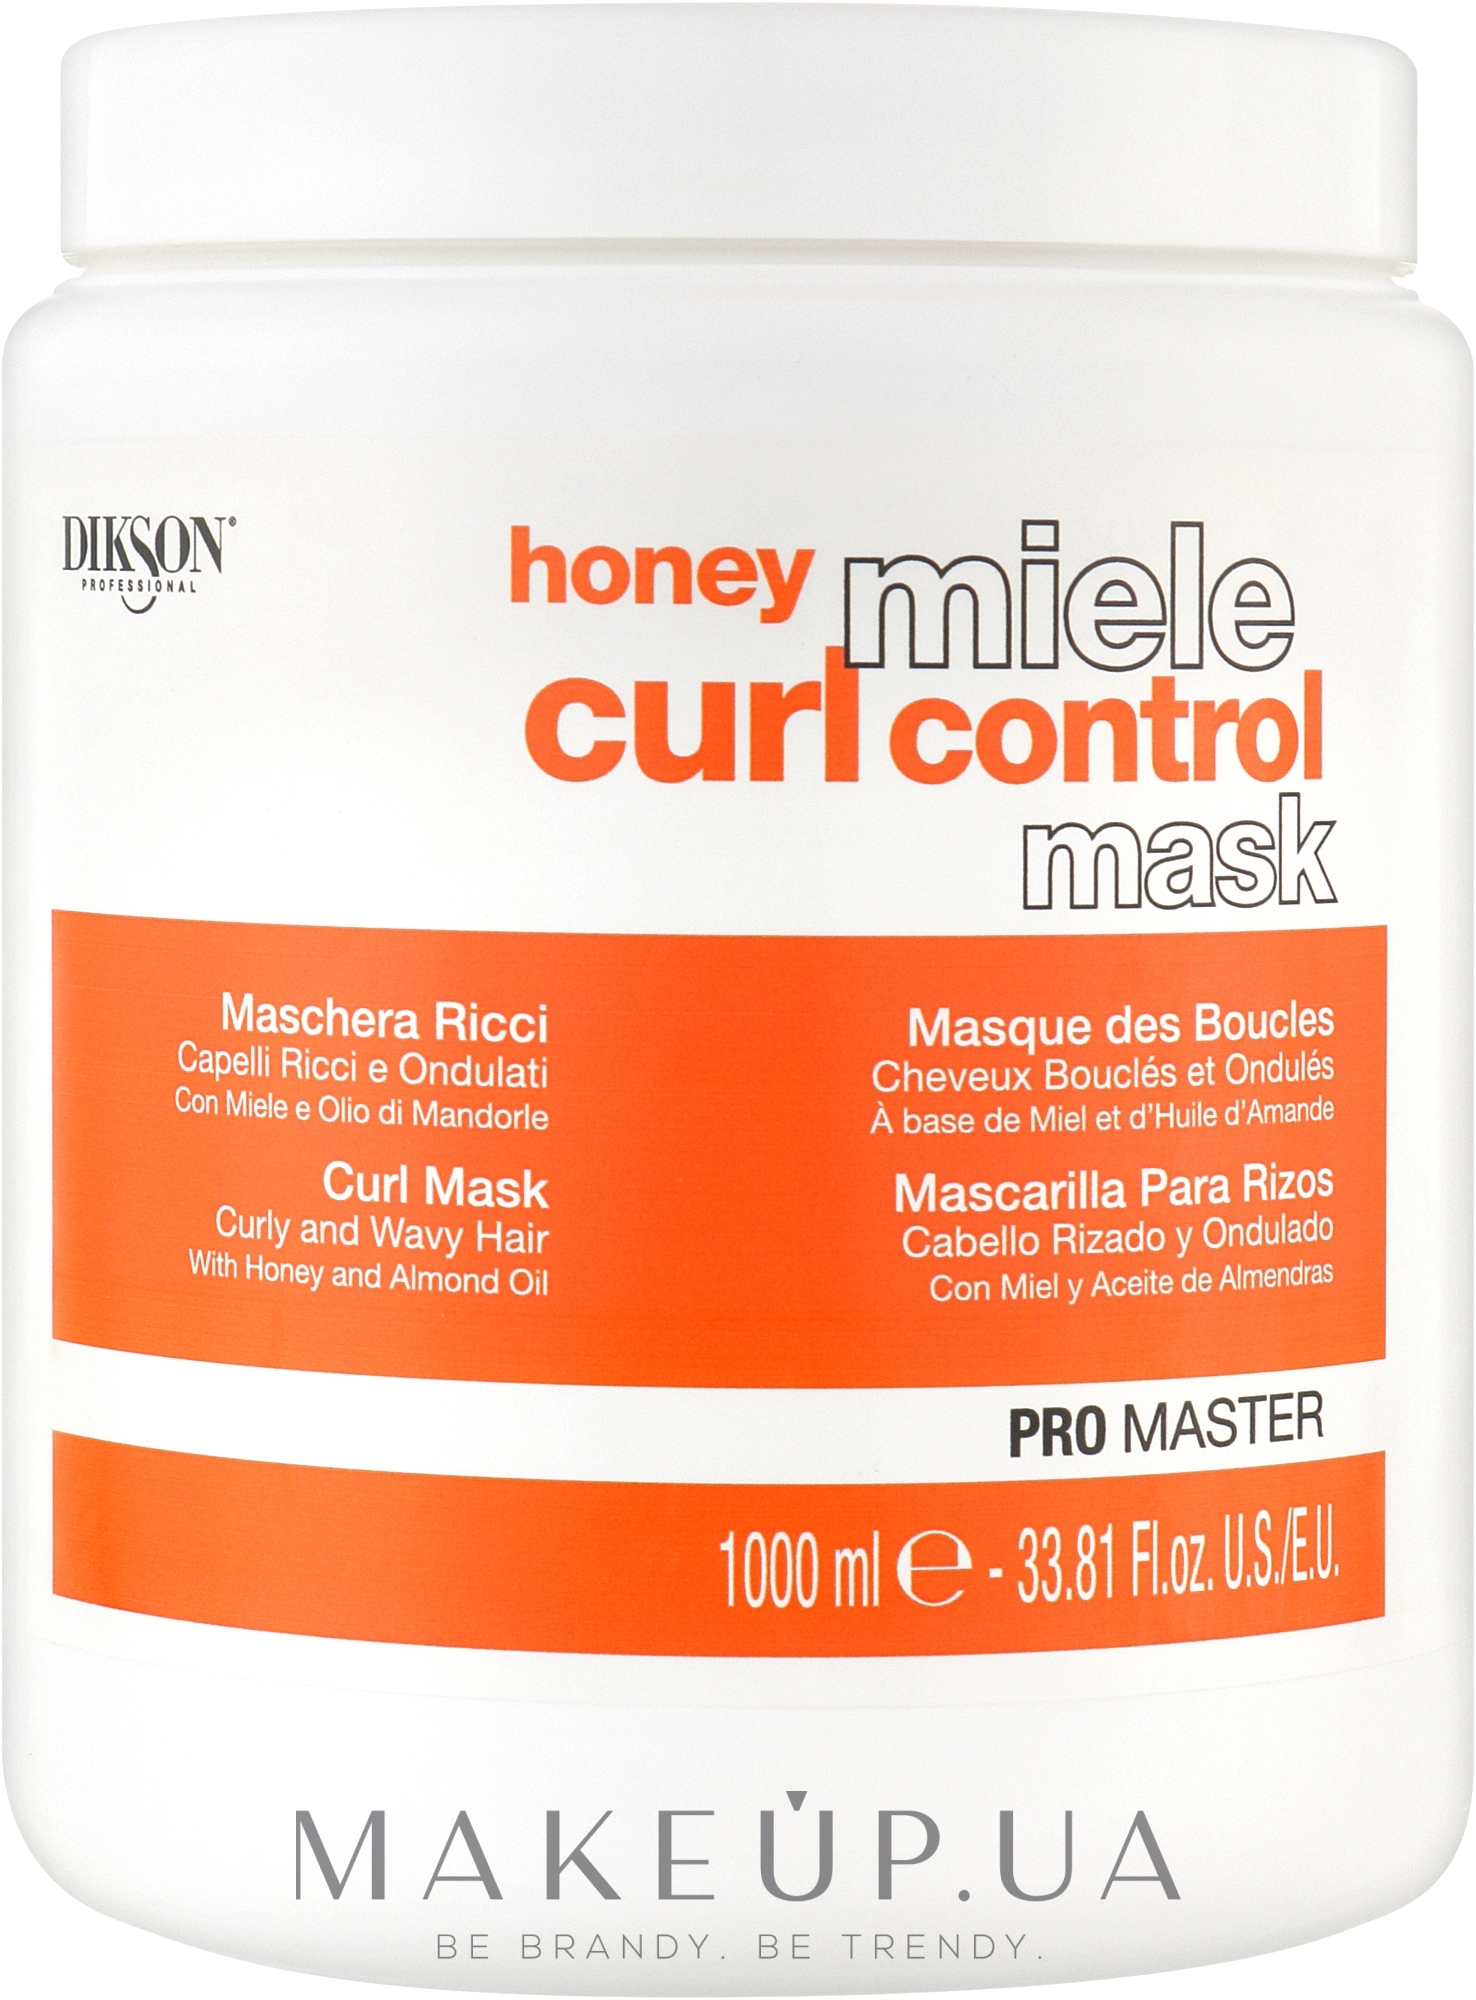 Медовая маска для вьющихся волос - Dikson Honey Miele Curl Control Mask — фото 1000ml